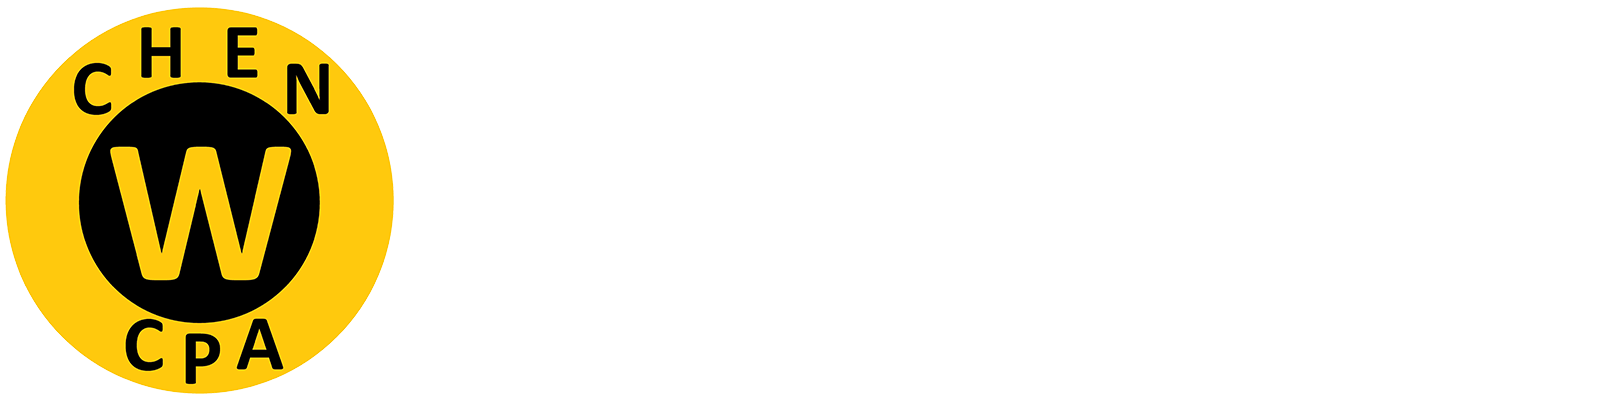 Will Chen CPA PLLC Logo